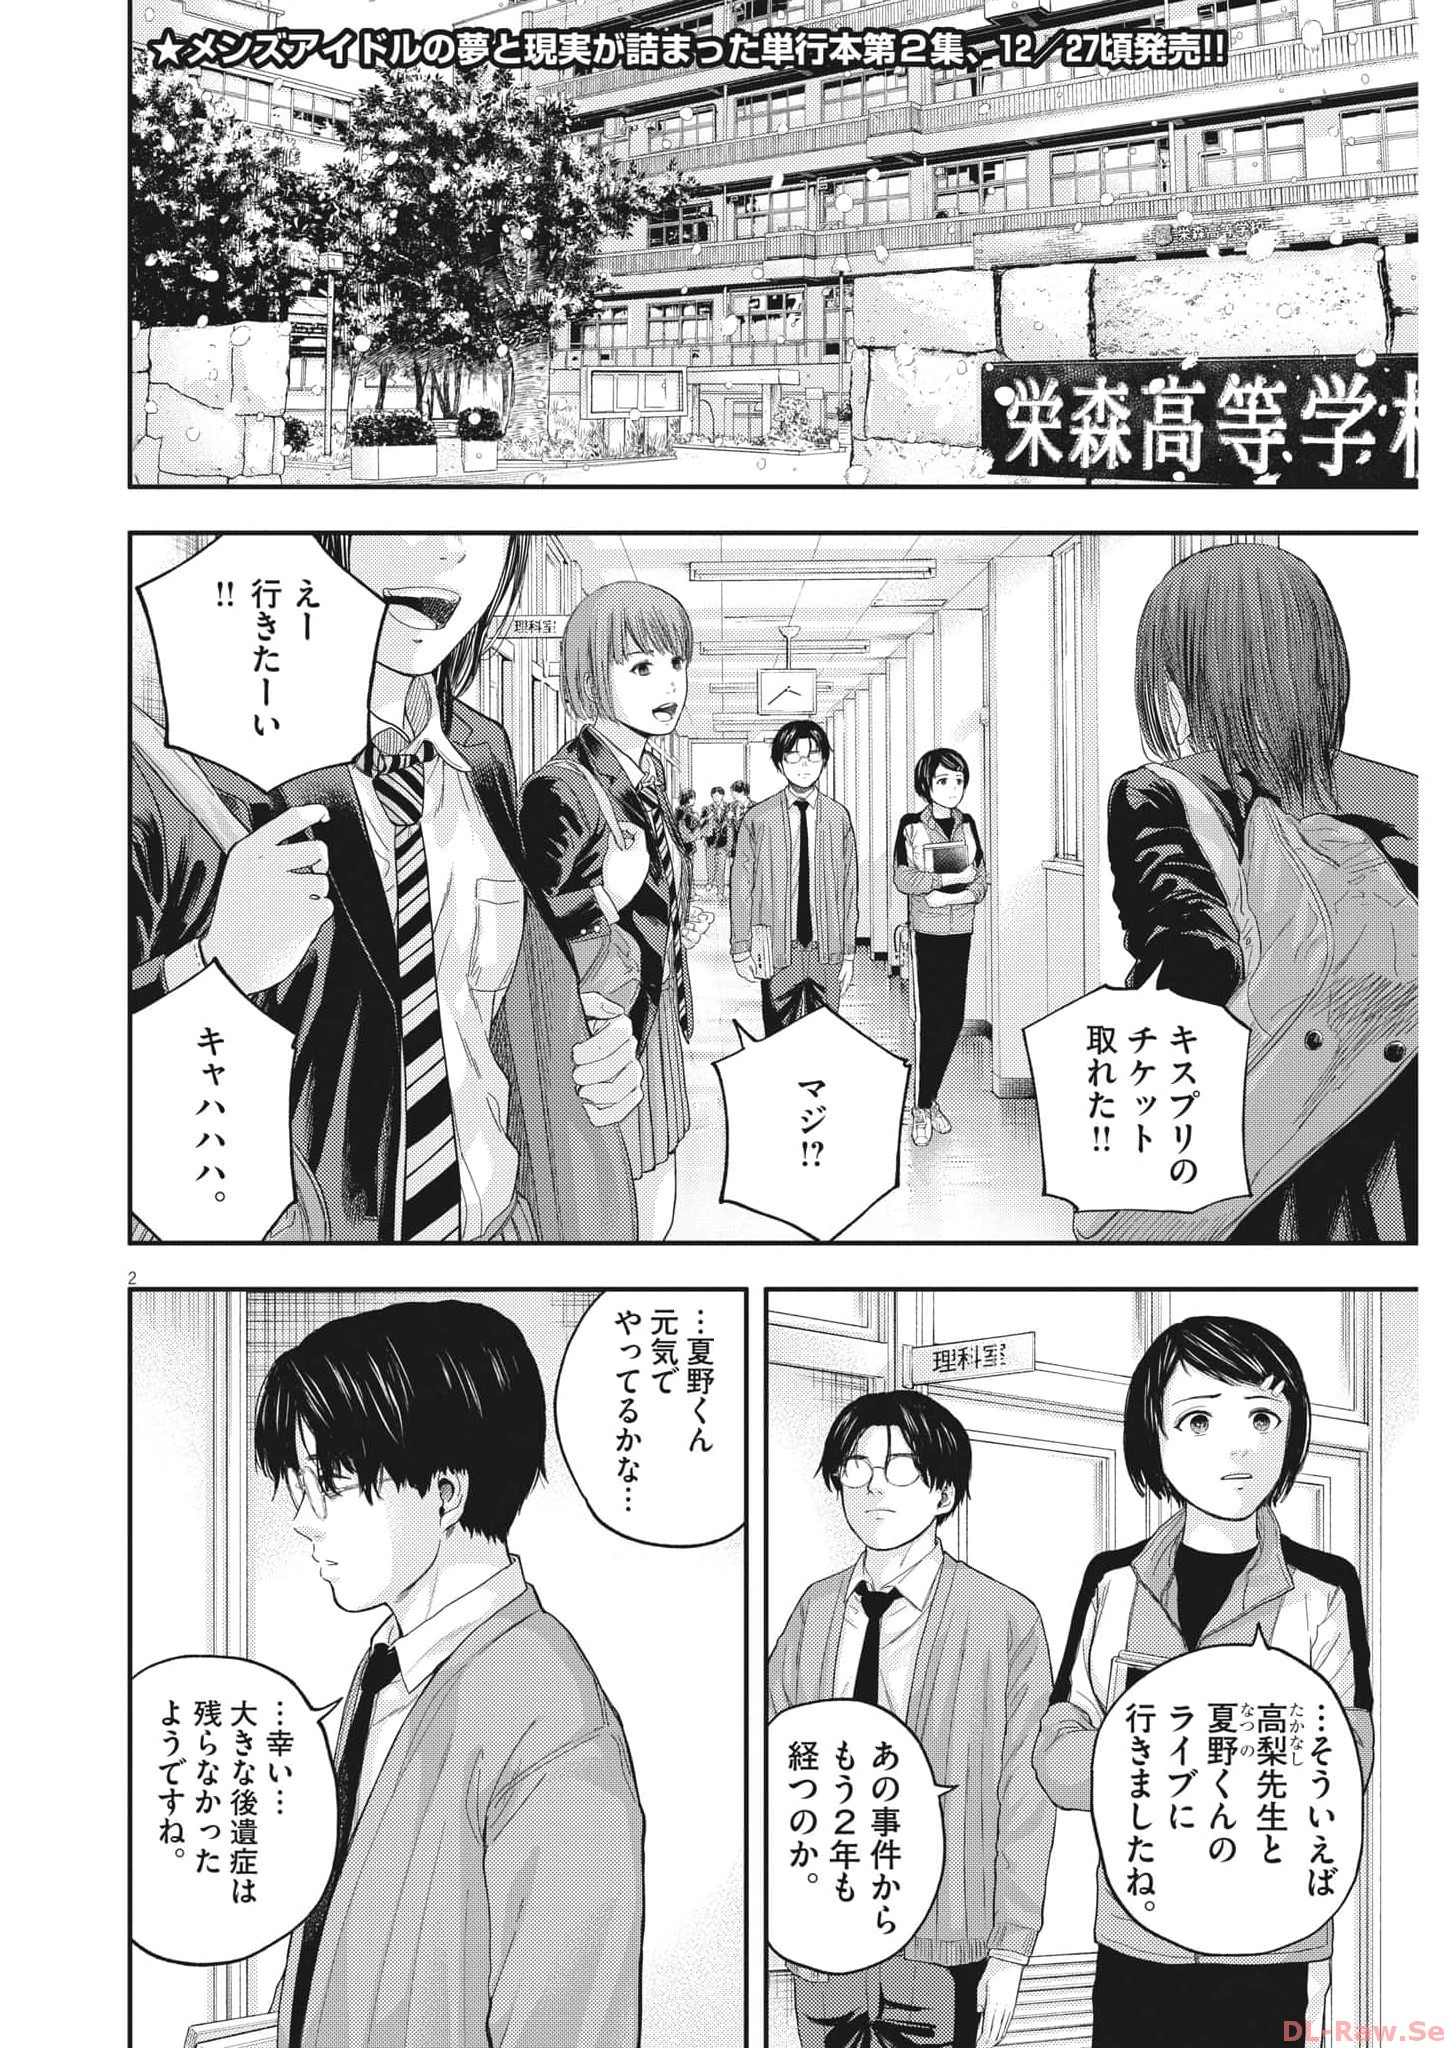 Yumenashi-sensei no Shinroshidou - Chapter 18 - Page 2